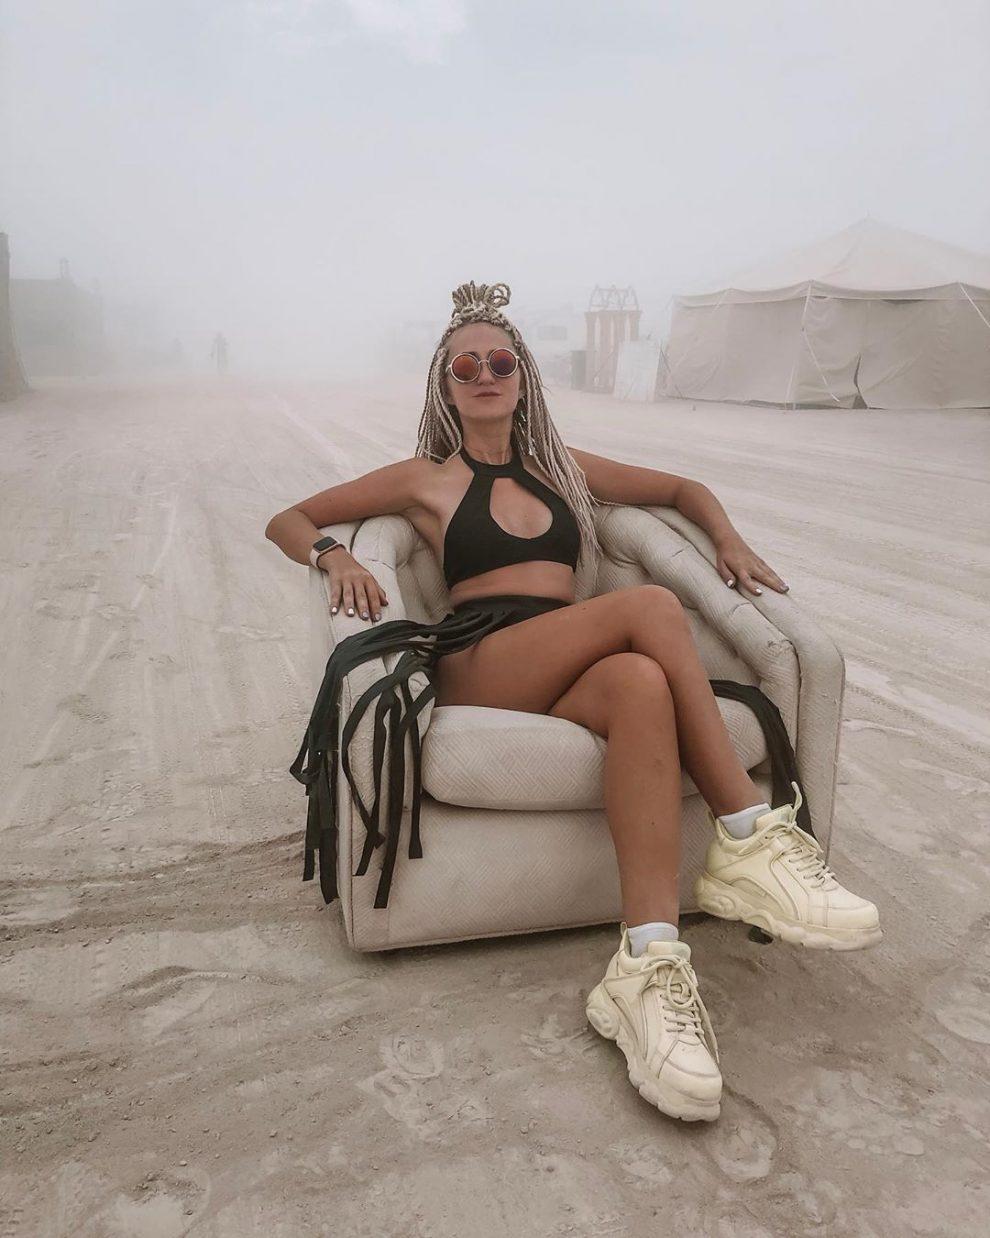 Фантастические кадры с фестиваля Burning Man 2019